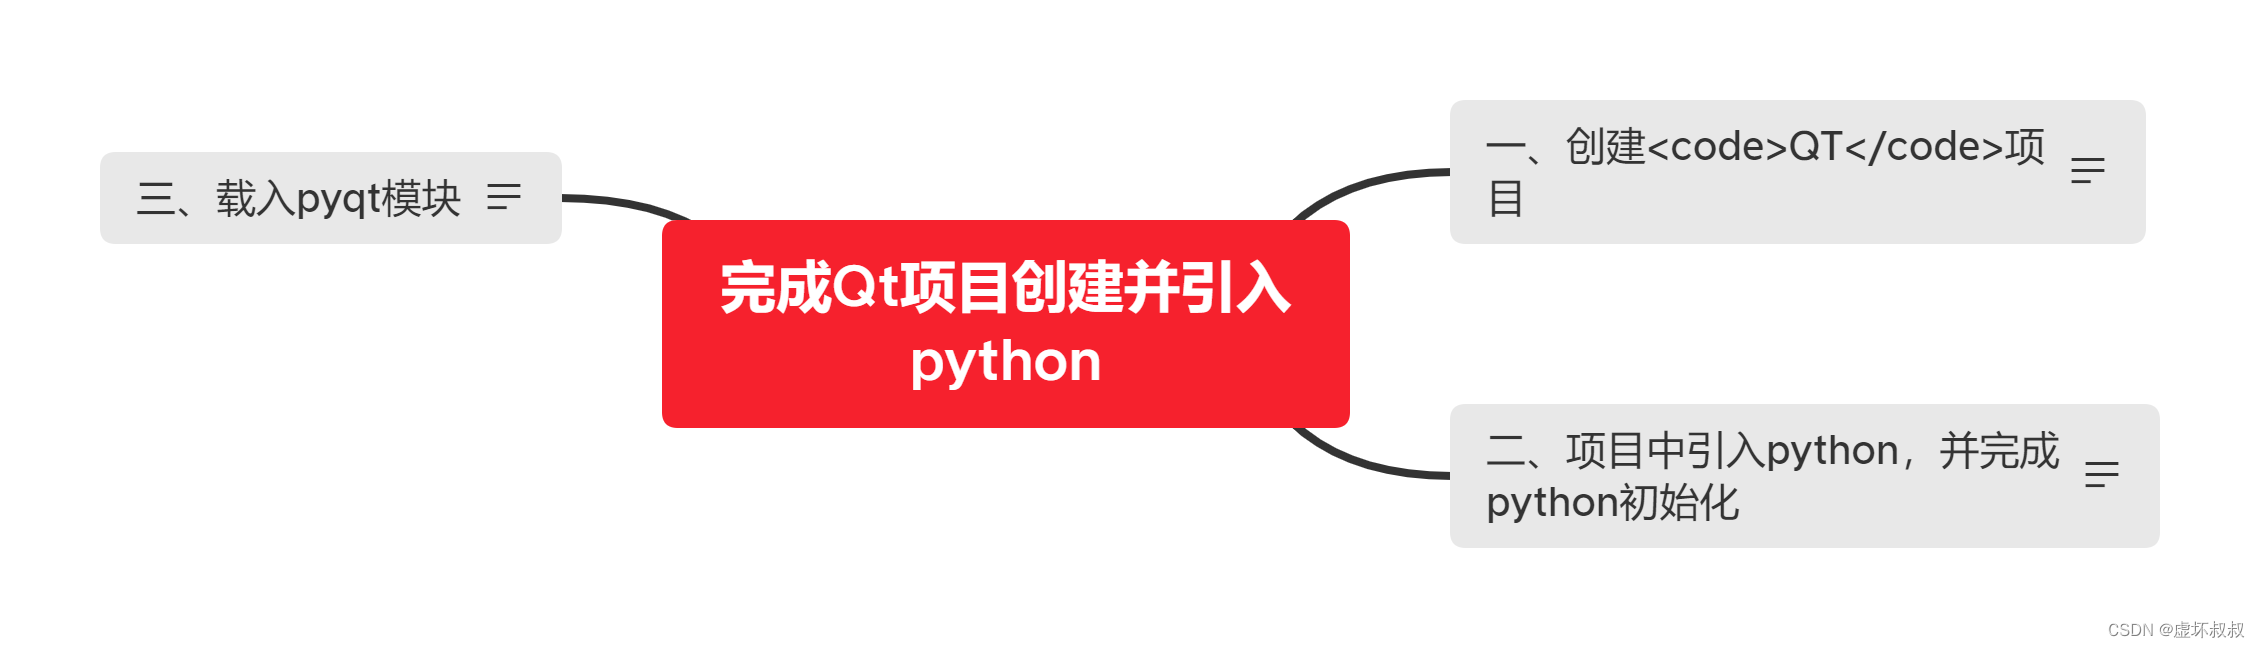 d862168930ac4d3e8f05b0b5684d97e7 - Python&C++相互混合调用编程全面实战-22完成Qt项目创建并引入python